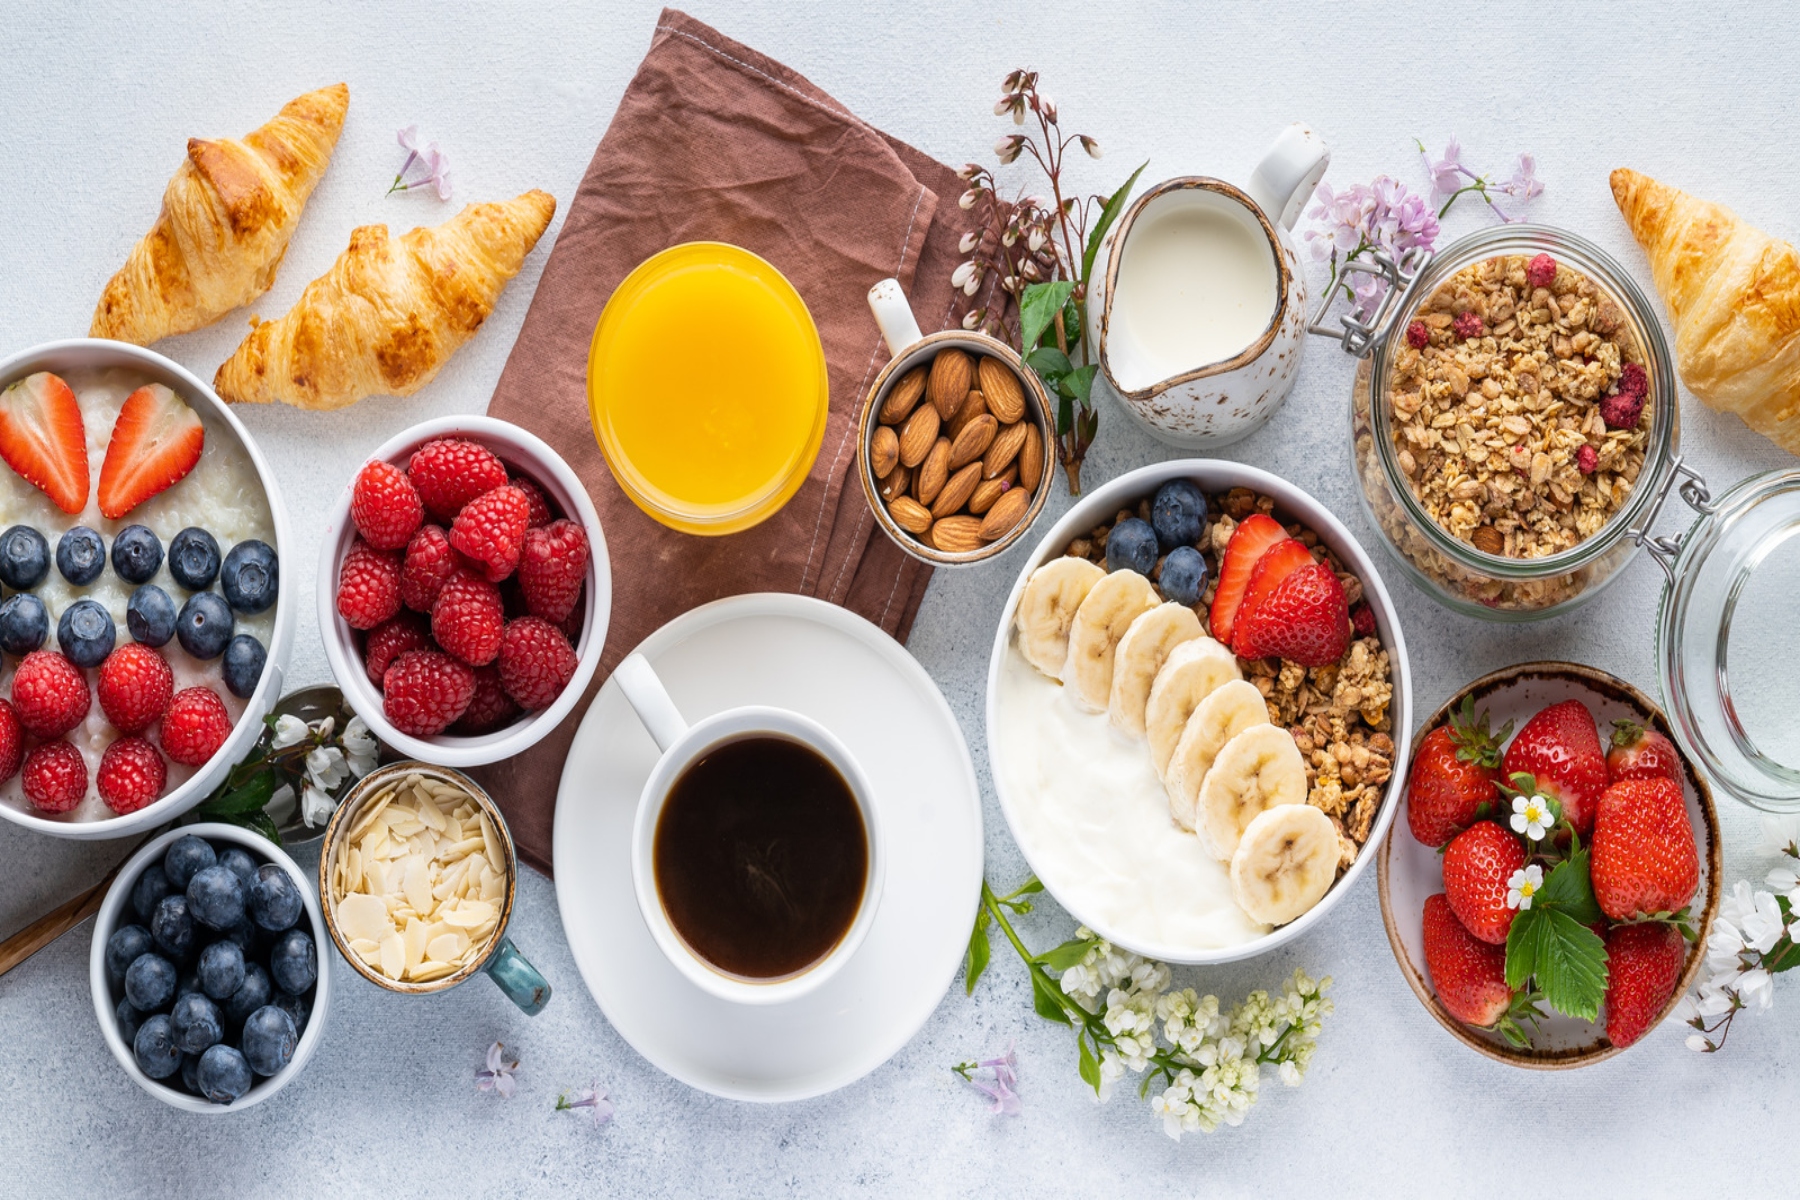 Πρωινό φρούτα: Ποια είδη φρούτων θα πρέπει να αποφεύγουμε να τρώμε σαν πρωινό;